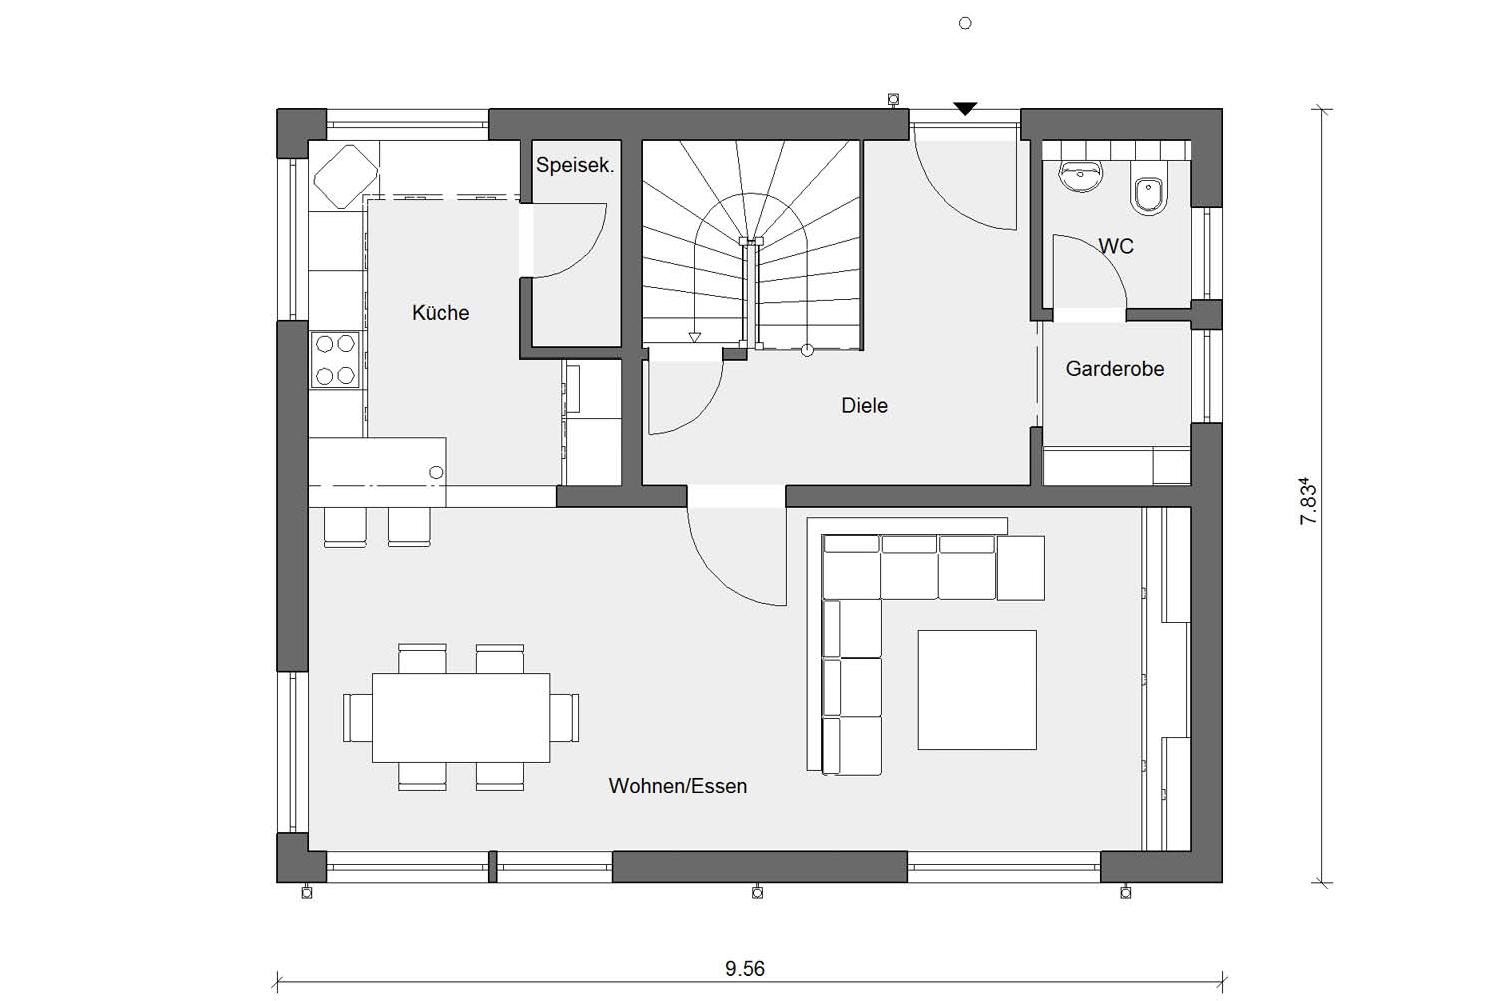 Plan d'étage rez-de-chaussée E 15-123.4 maison individuelle compacte